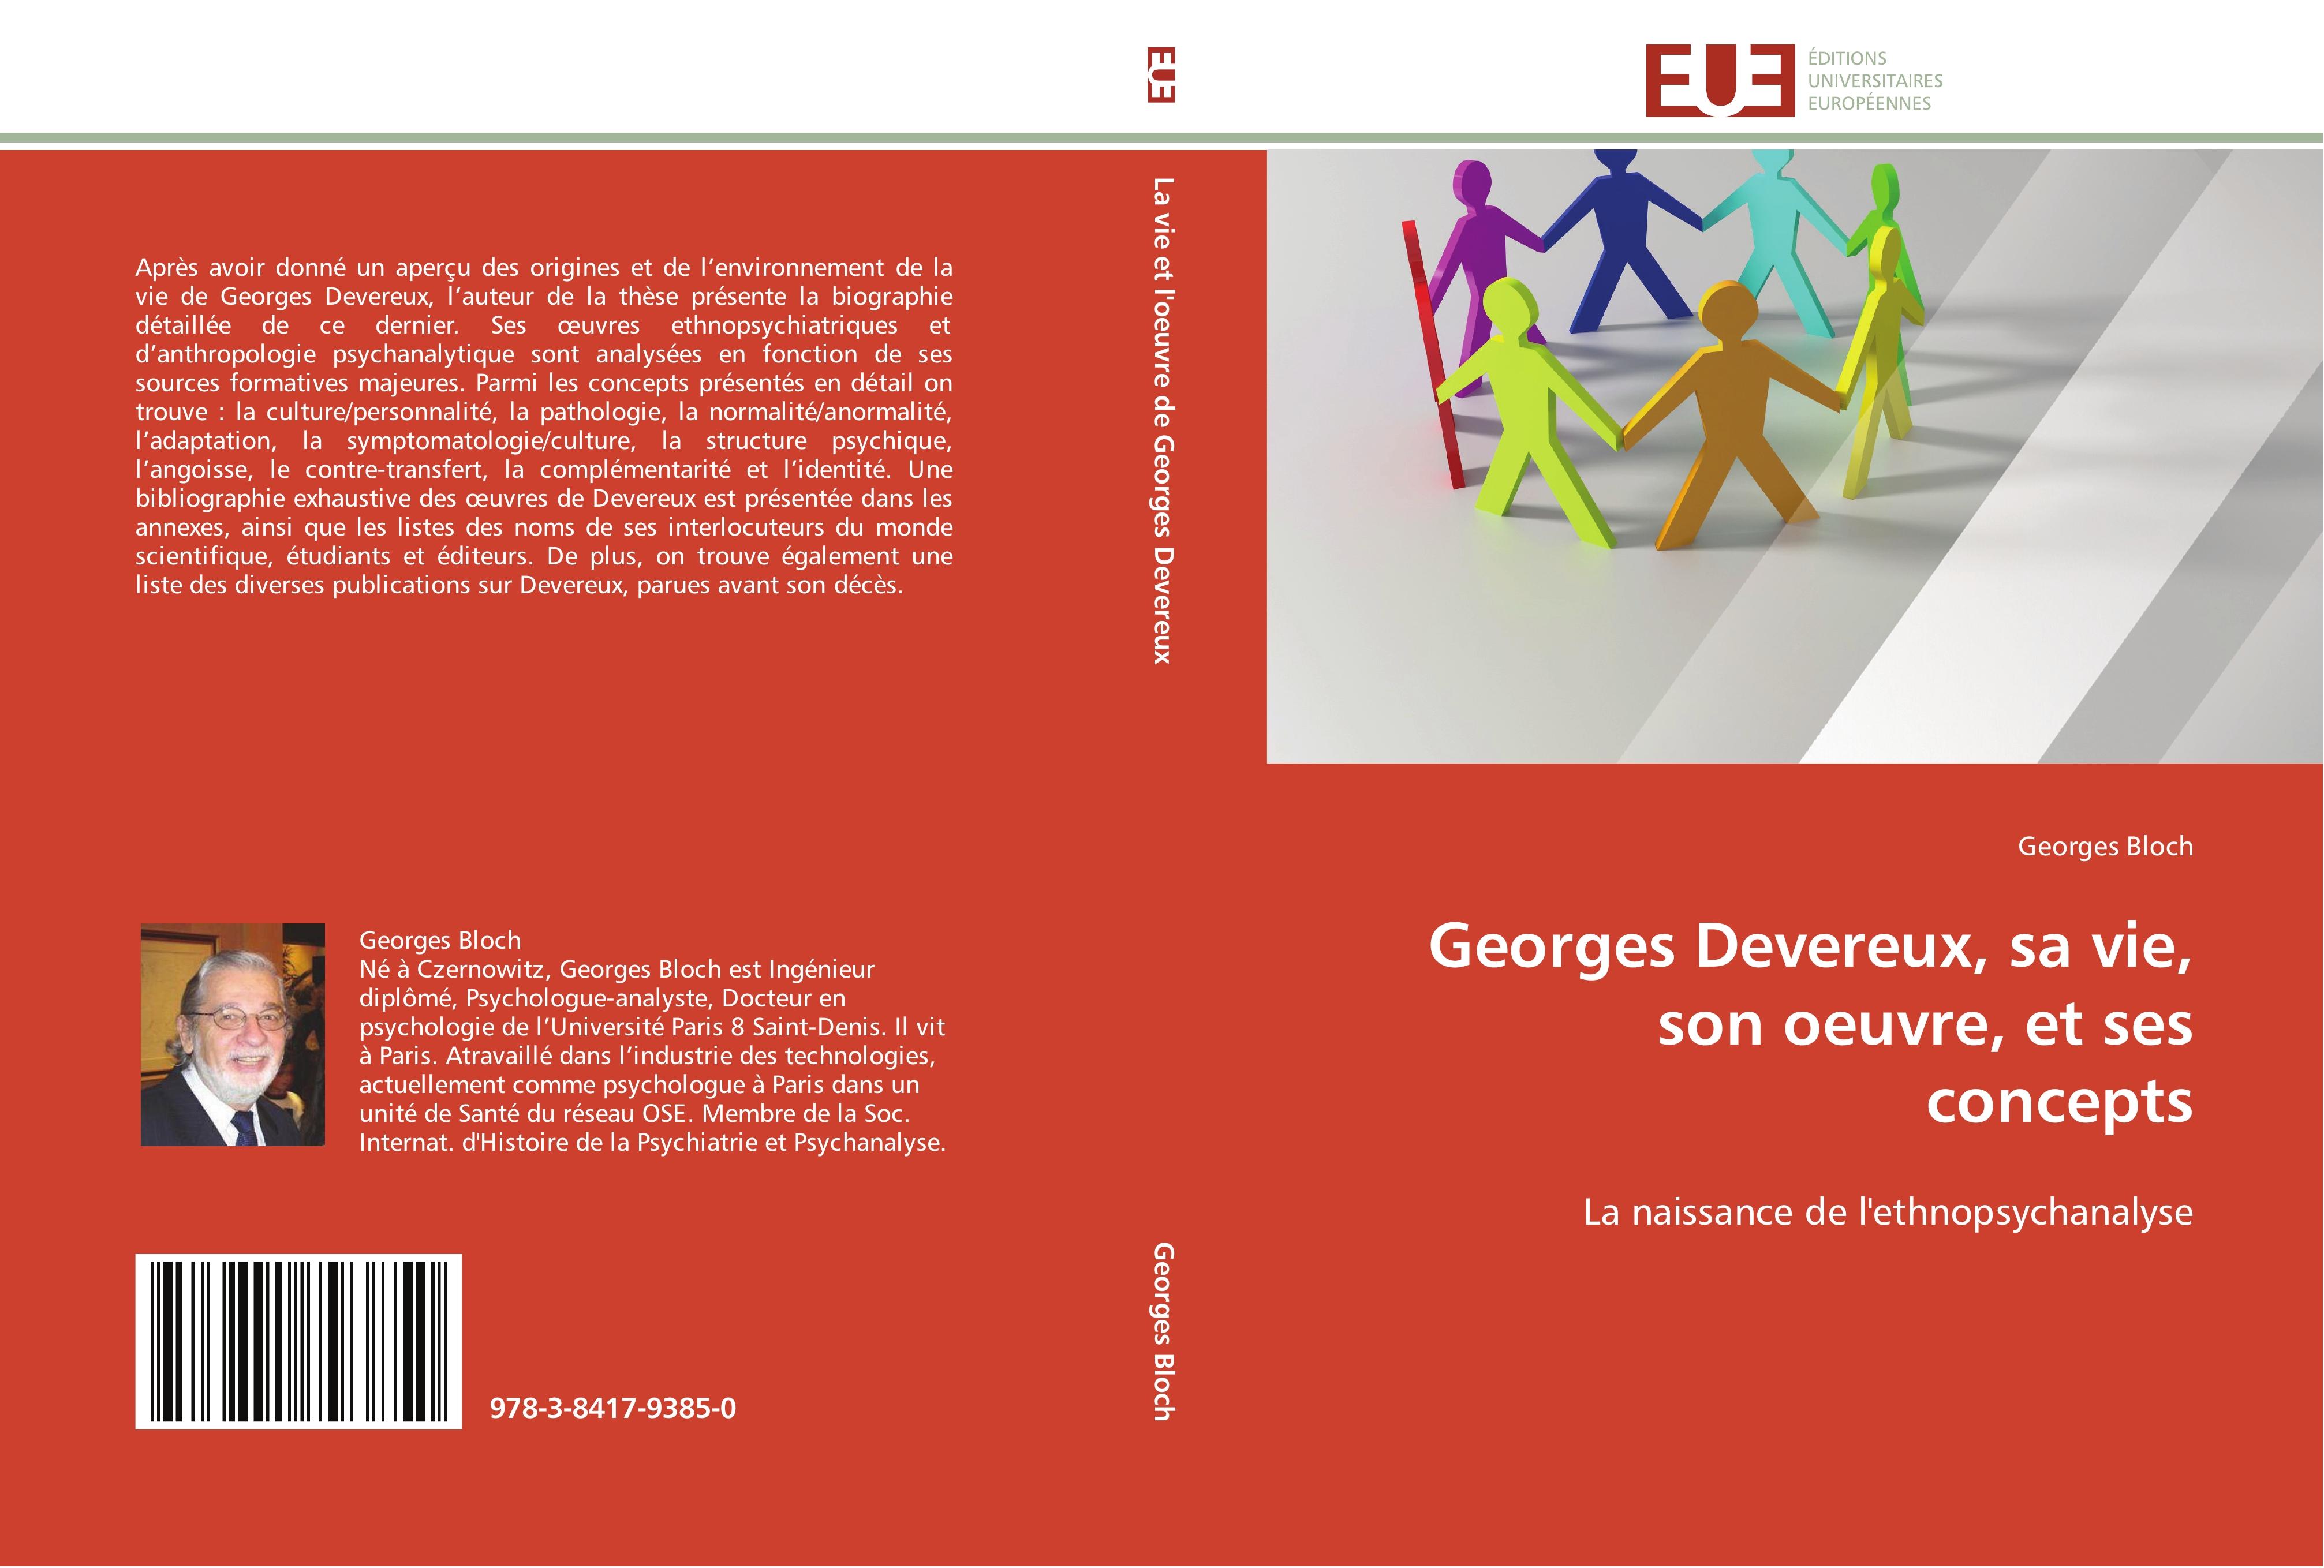 Georges Devereux, sa vie, son oeuvre, et ses concepts - Georges Bloch